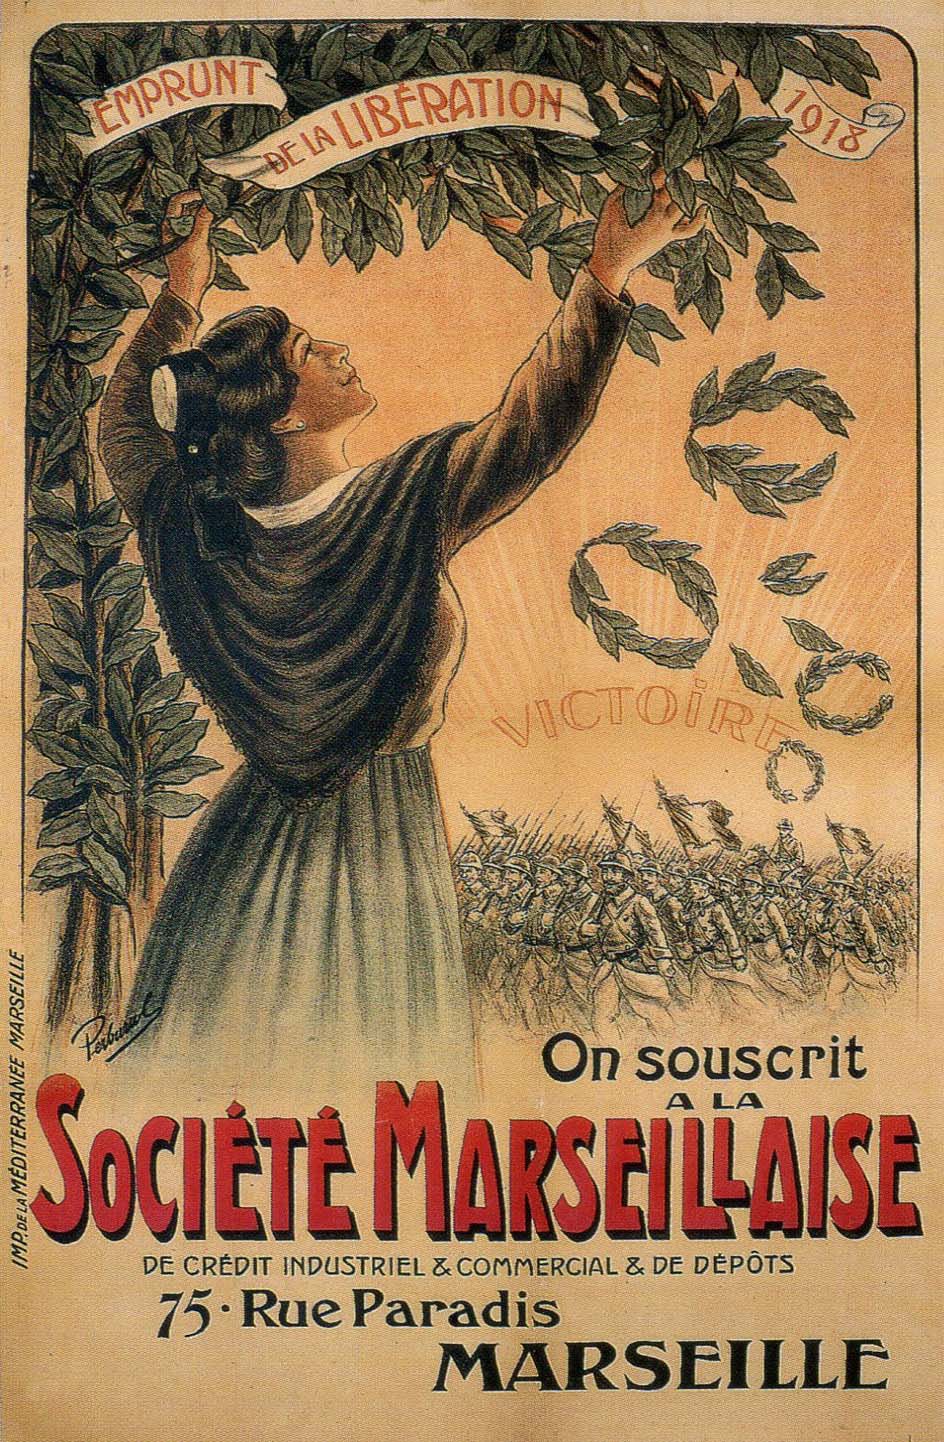 Emprunt de la Libération 1918 - On souscrit à la Société Marseillaise de Crédit Industriel & Commercial & de Dépôts - 75, Rue Paradis - Marseille